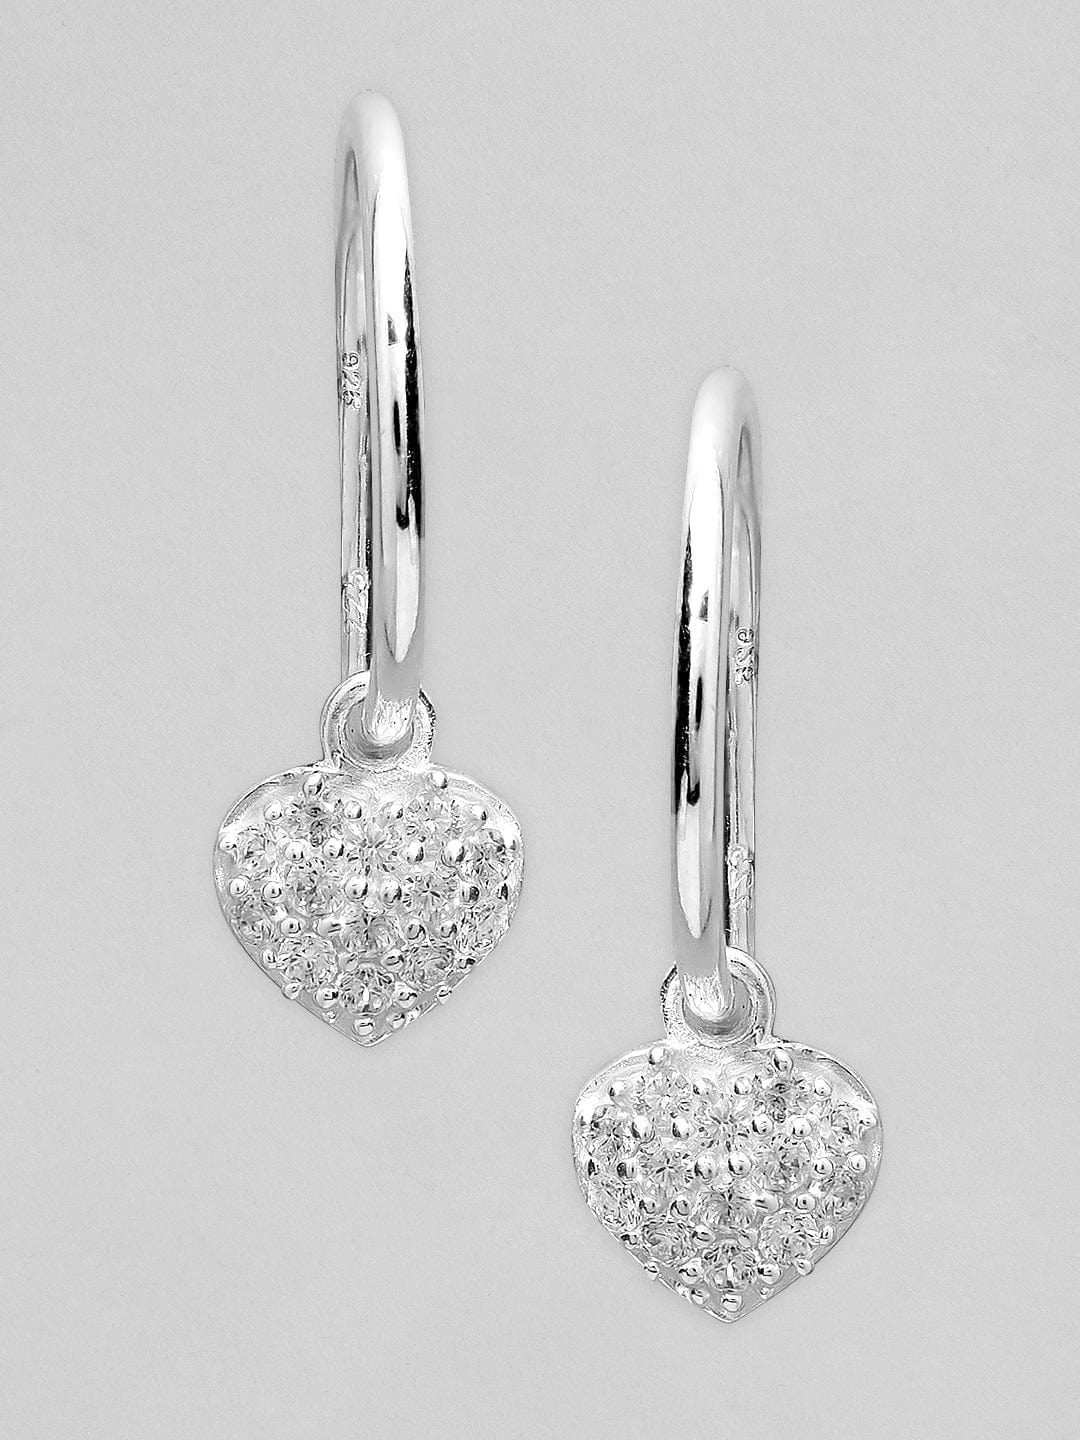 Rubans 925 Silver The Shimering Heart Ring Hoop Earrings. Earrings